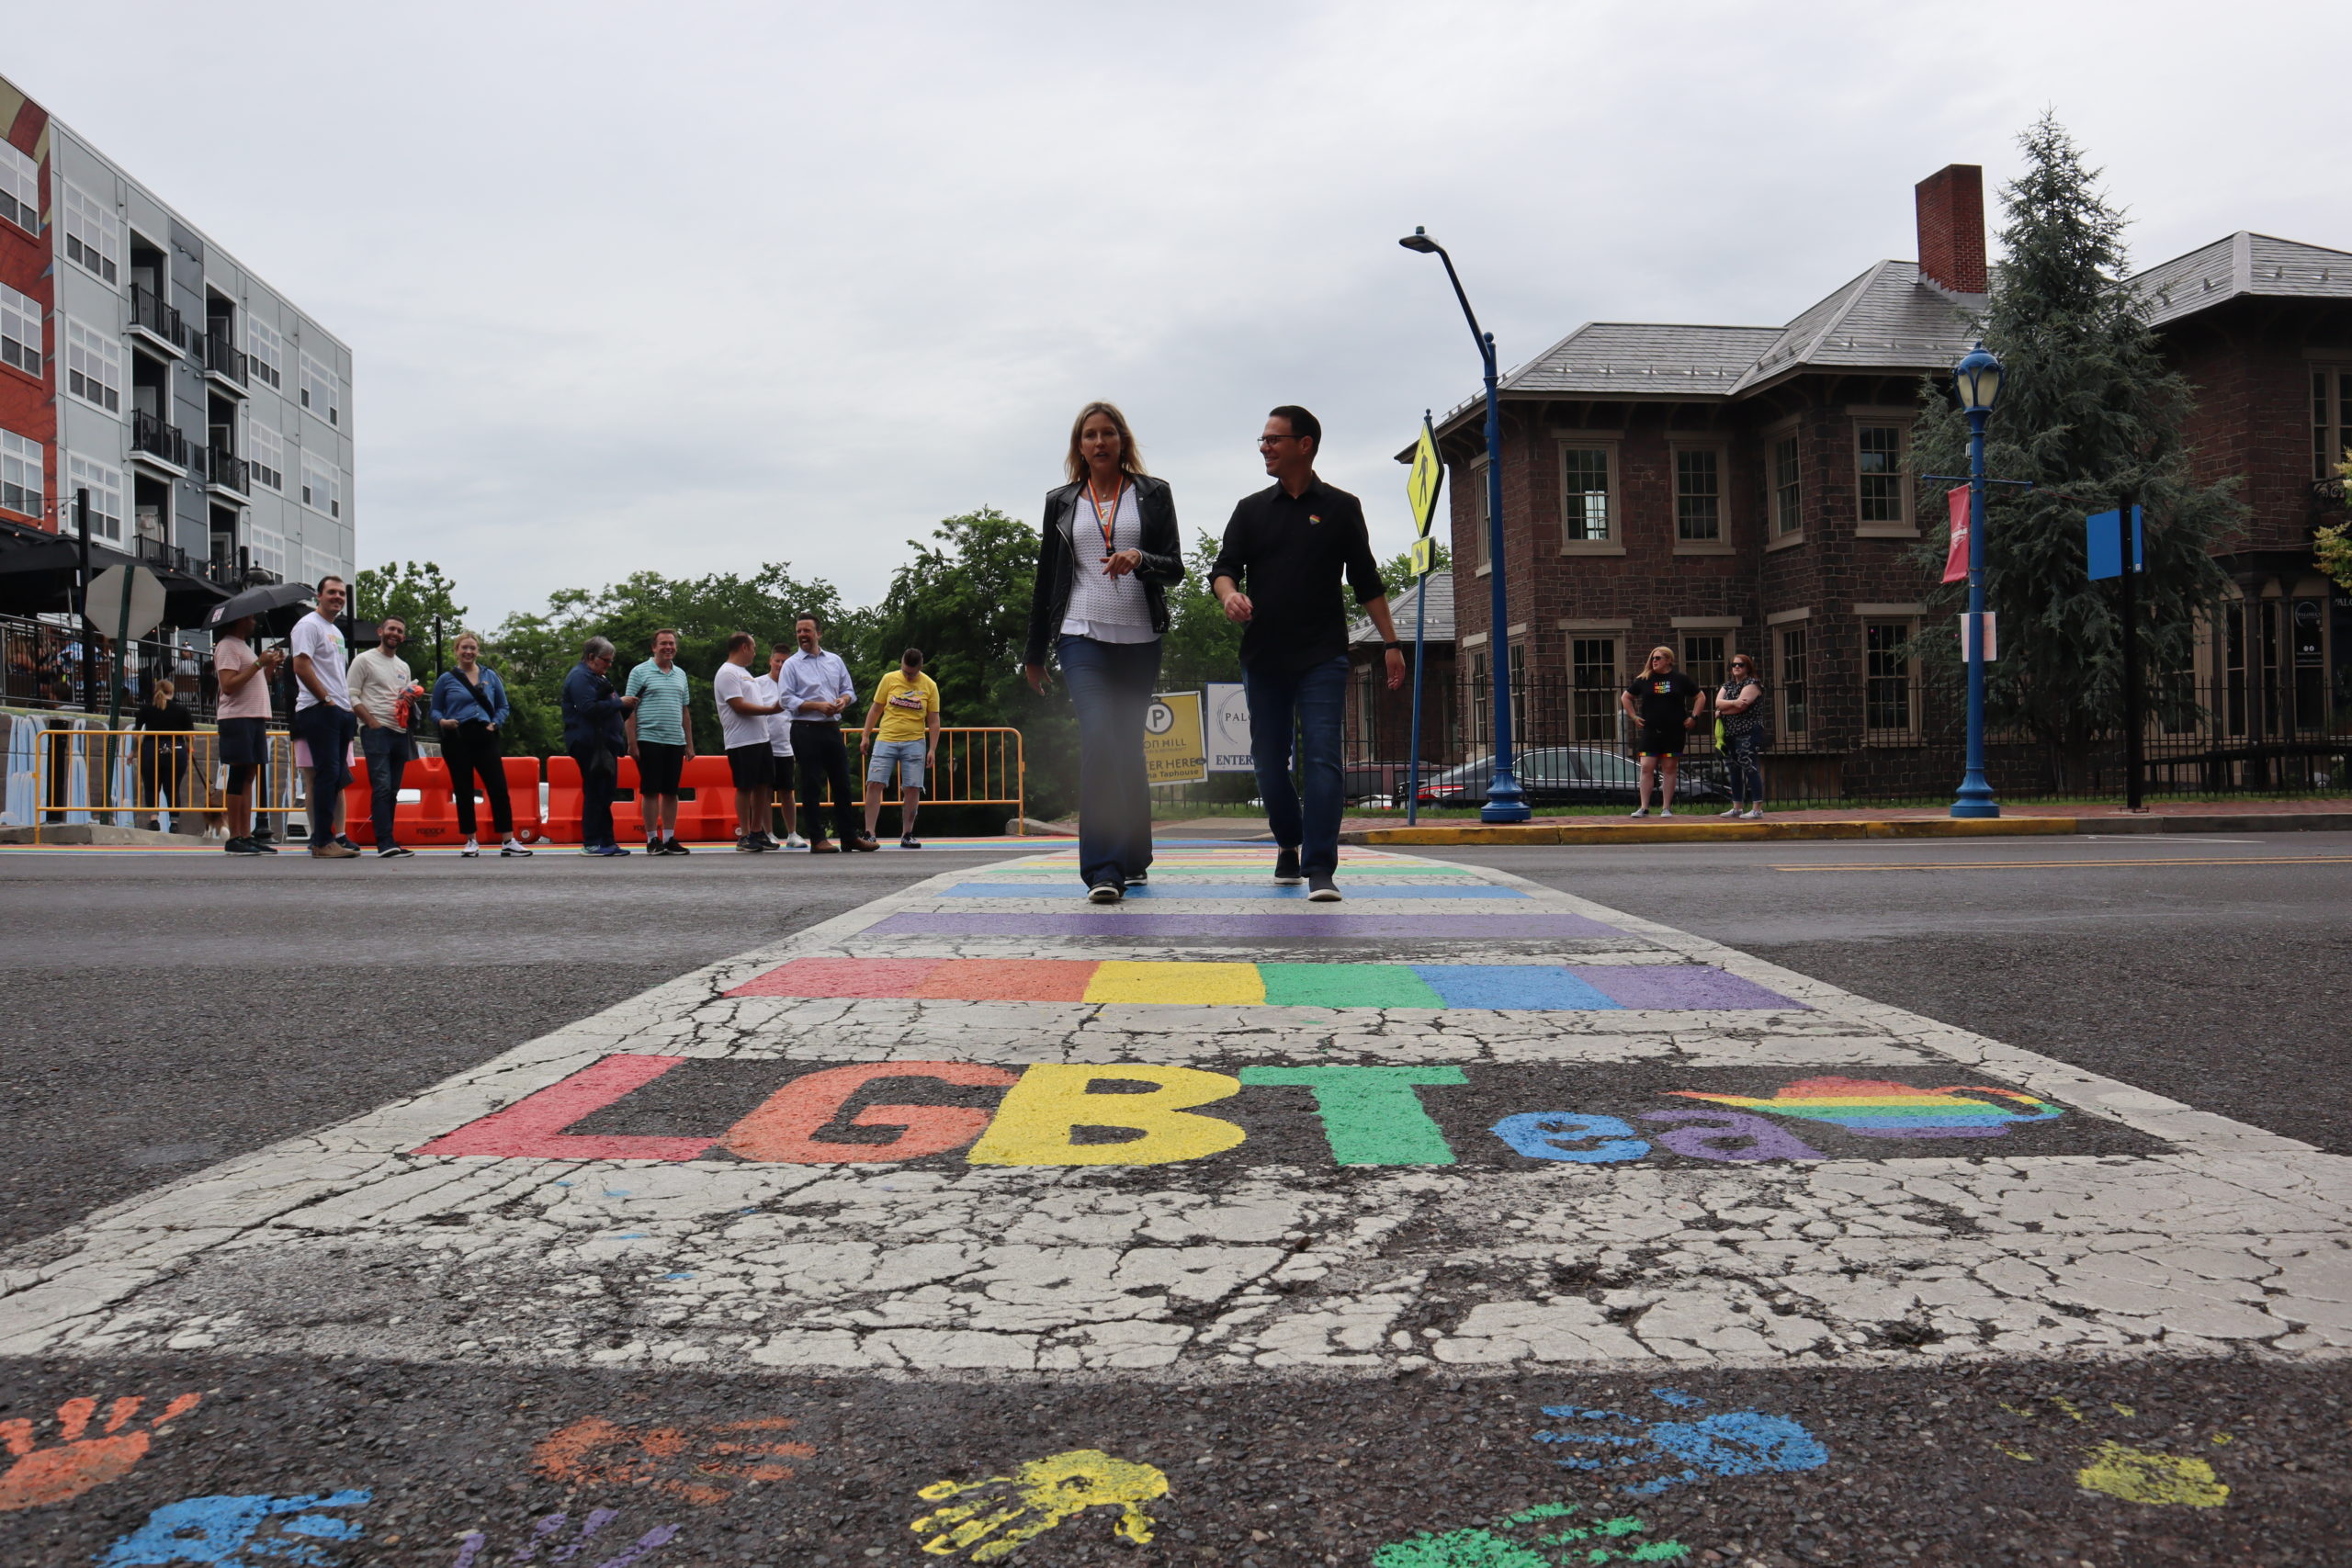 Josh walking with a woman across a rainbow crosswalk